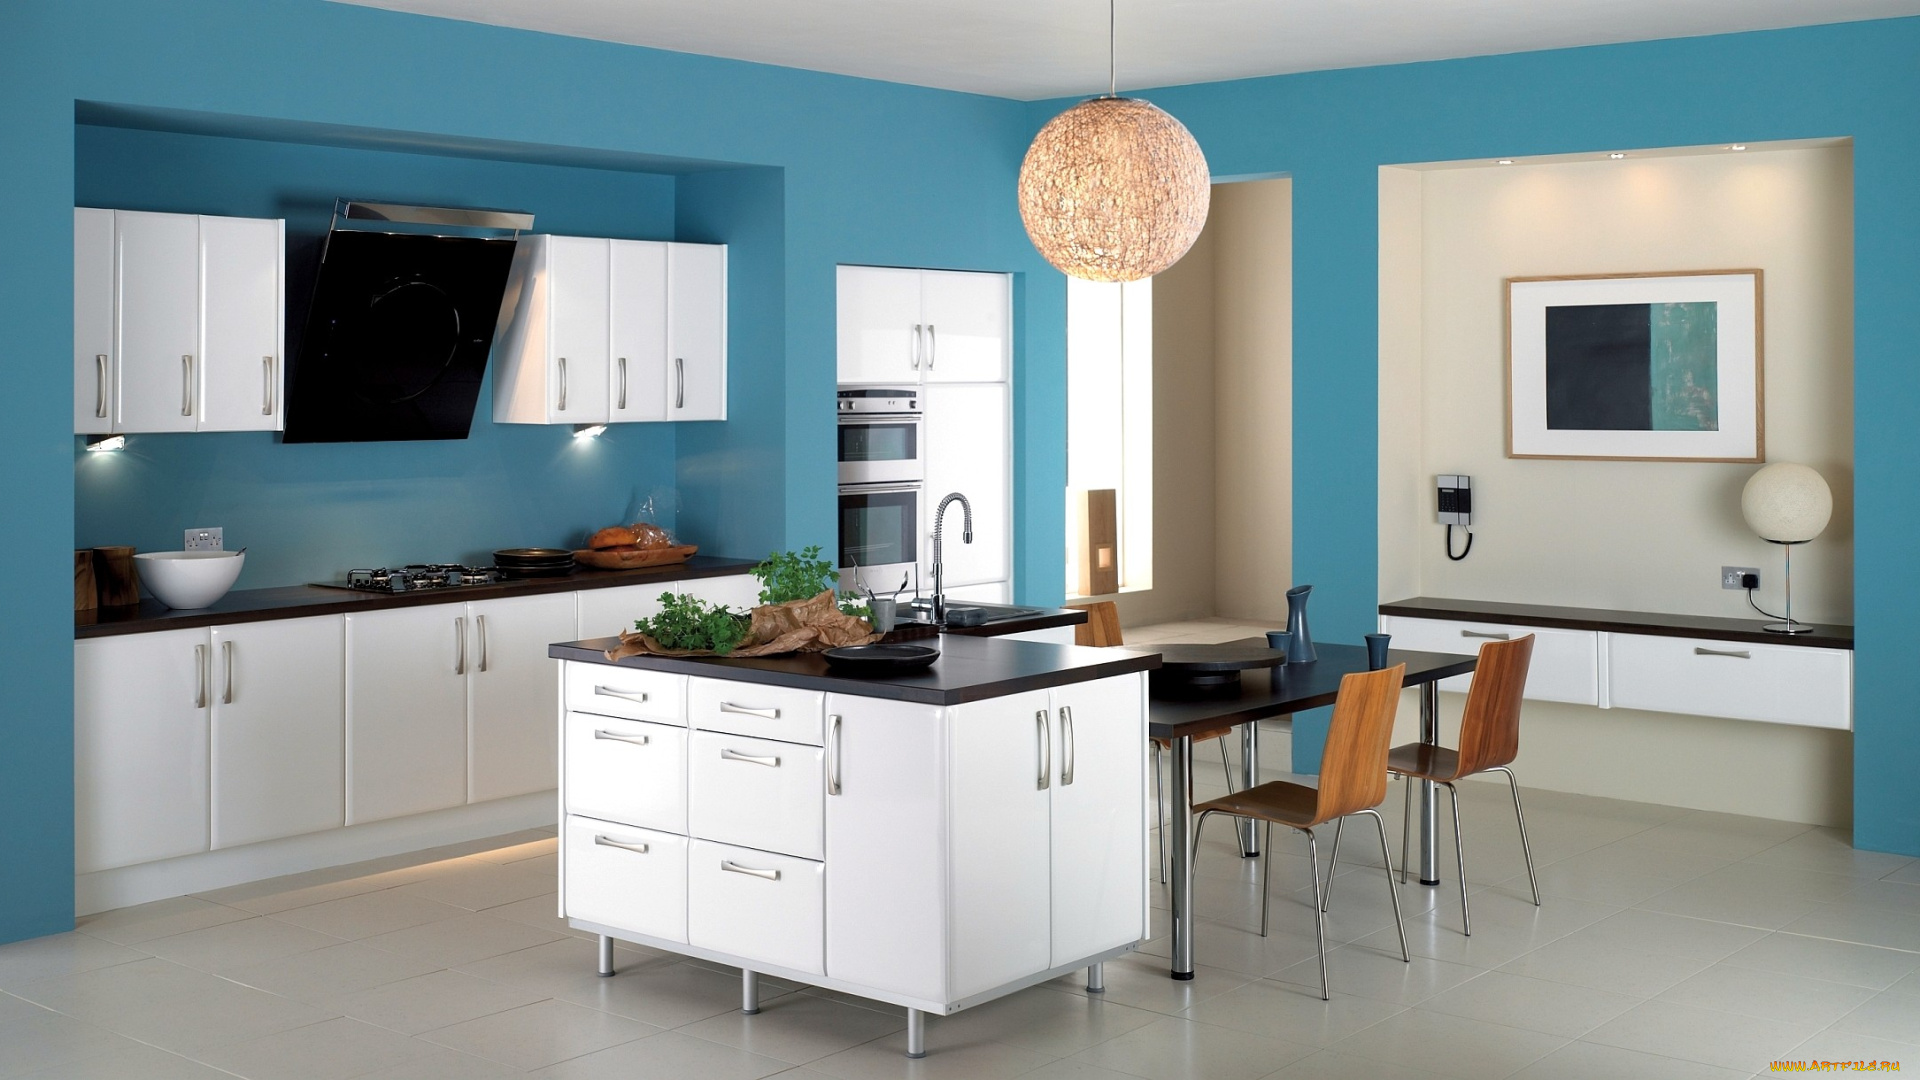 интерьер, кухня, плита, голубой, люстра, вытяжка, стулья, холодильник